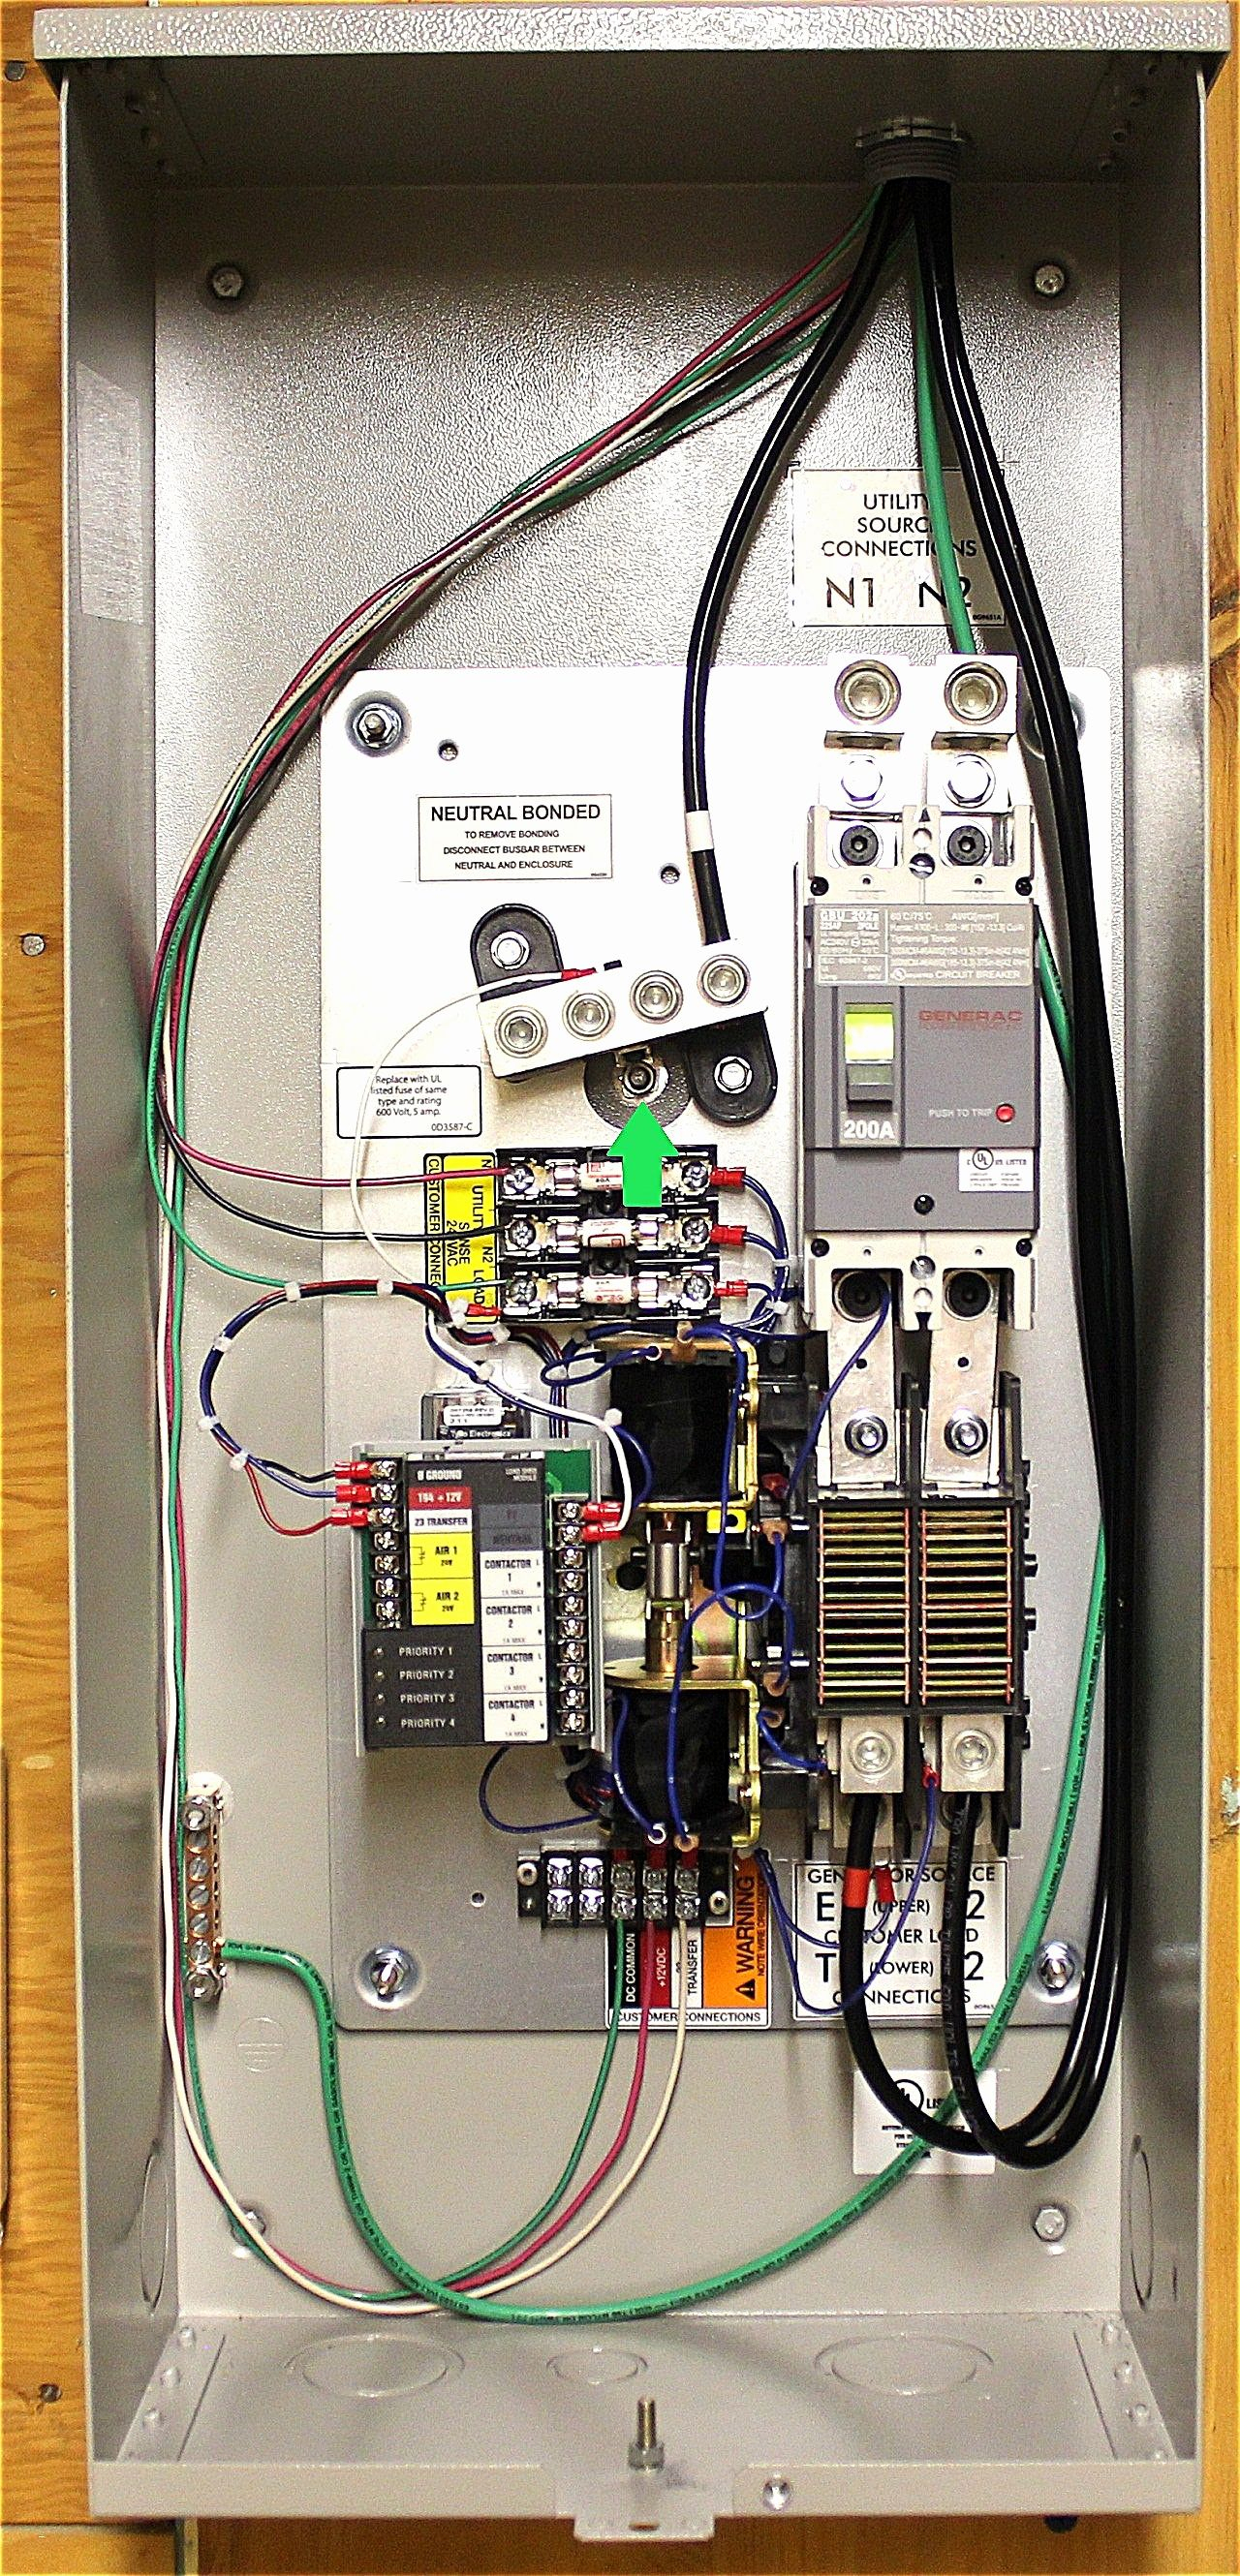 Generac 11Kw Generator Wiring Schematic - Wiring Diagrams - Generac Generator Wiring Diagram